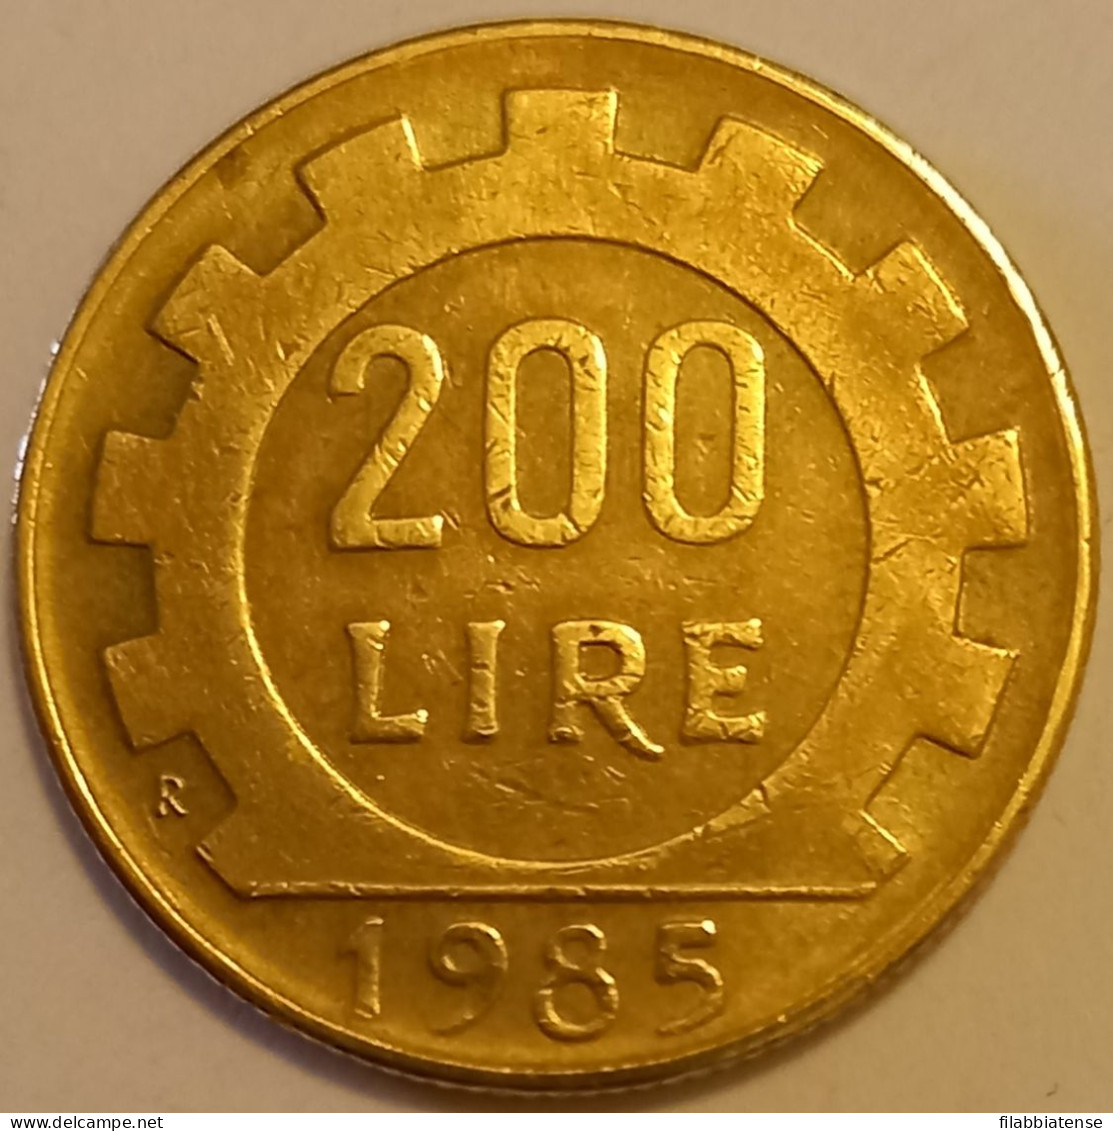 1985 - Italia 200 Lire    ---- - 200 Liras